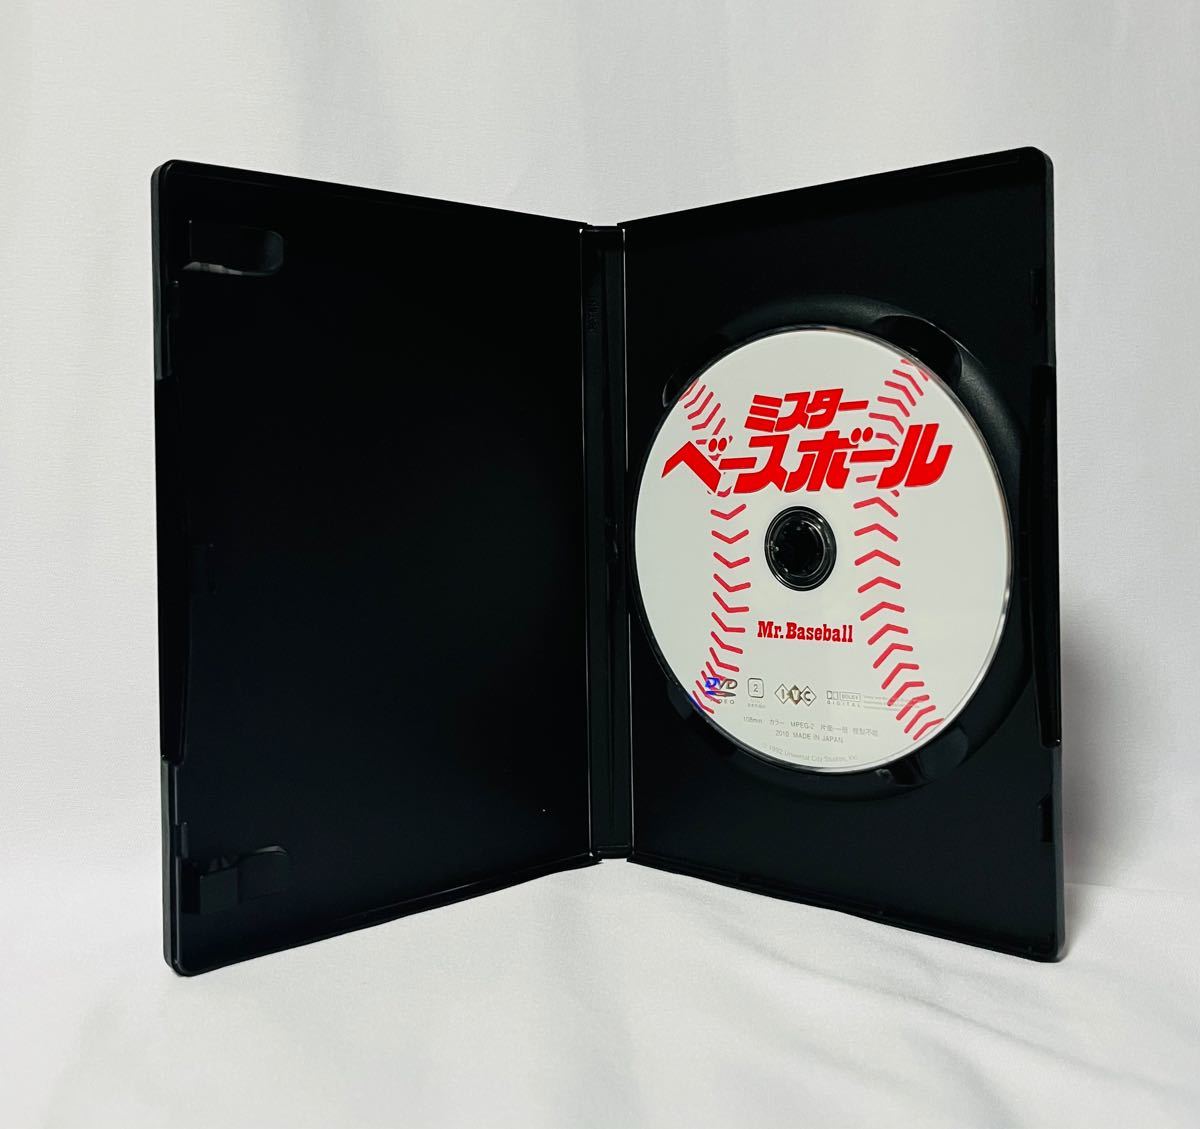 ミスター・ベースボール('92米) 【DVD】高倉健 / トムセレック